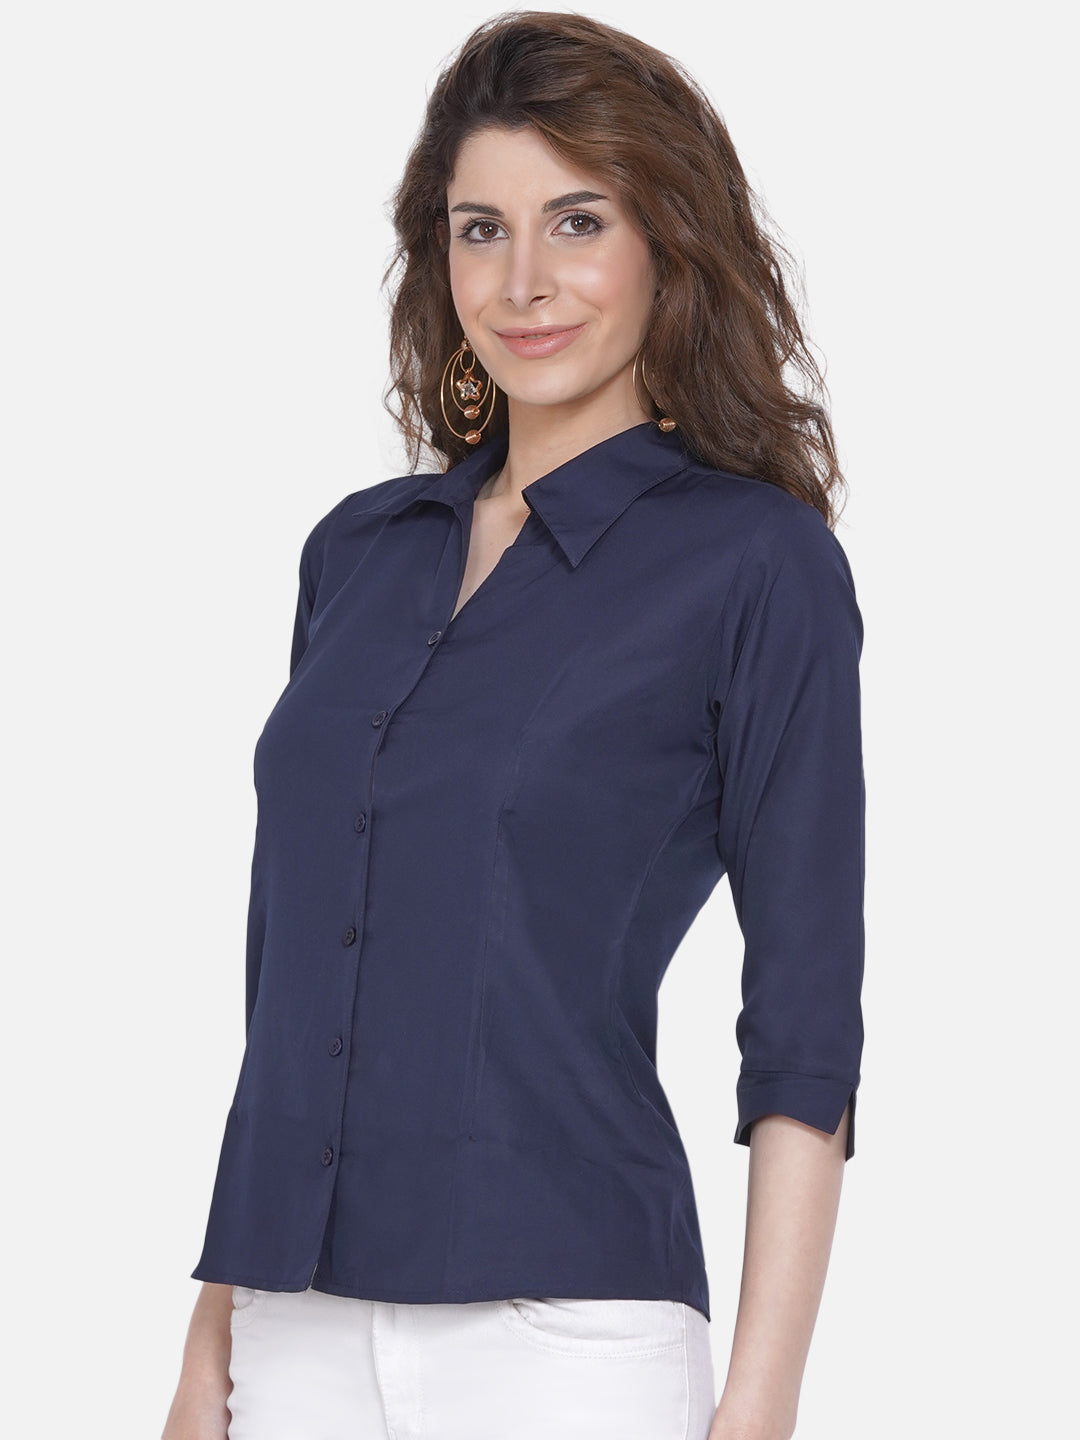 Women's Blue Casual Shirt - Wahe-Noor